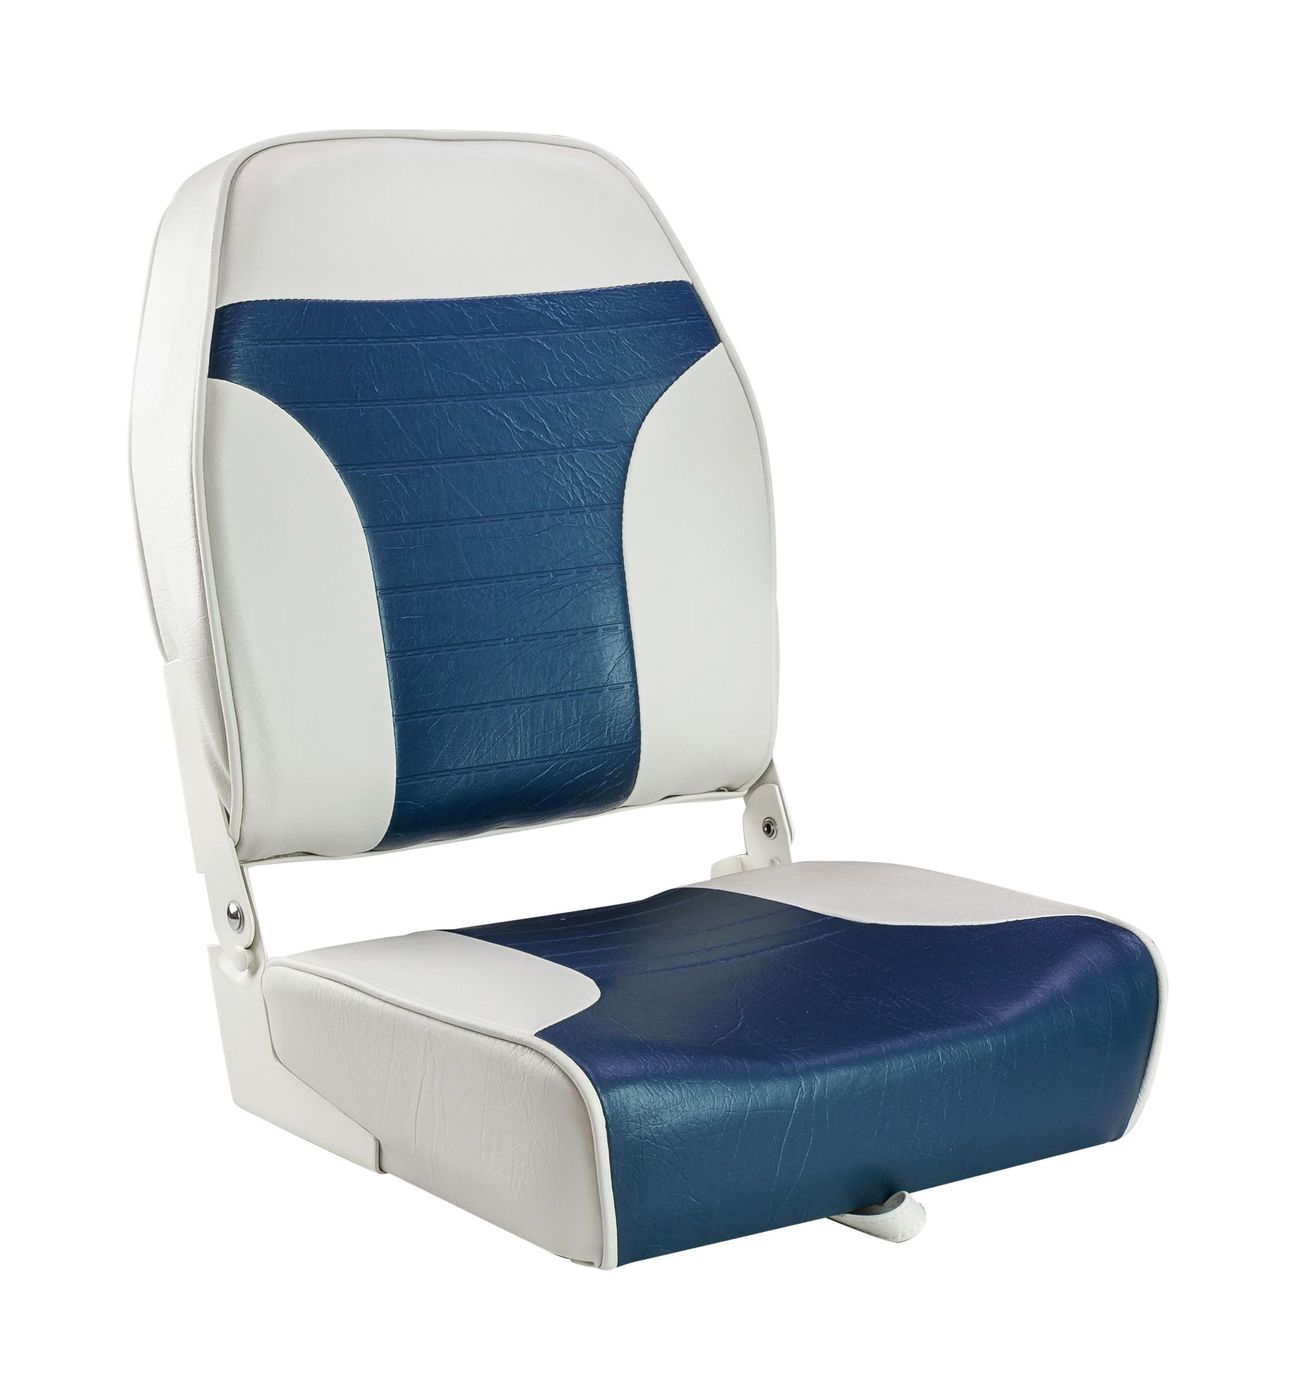 Кресло складное мягкое ECONOMY с высокой спинкой, цвет белый/синий 1040667 кресло складное мягкое economy с высокой спинкой обивка камуфляжная ткань 1040647